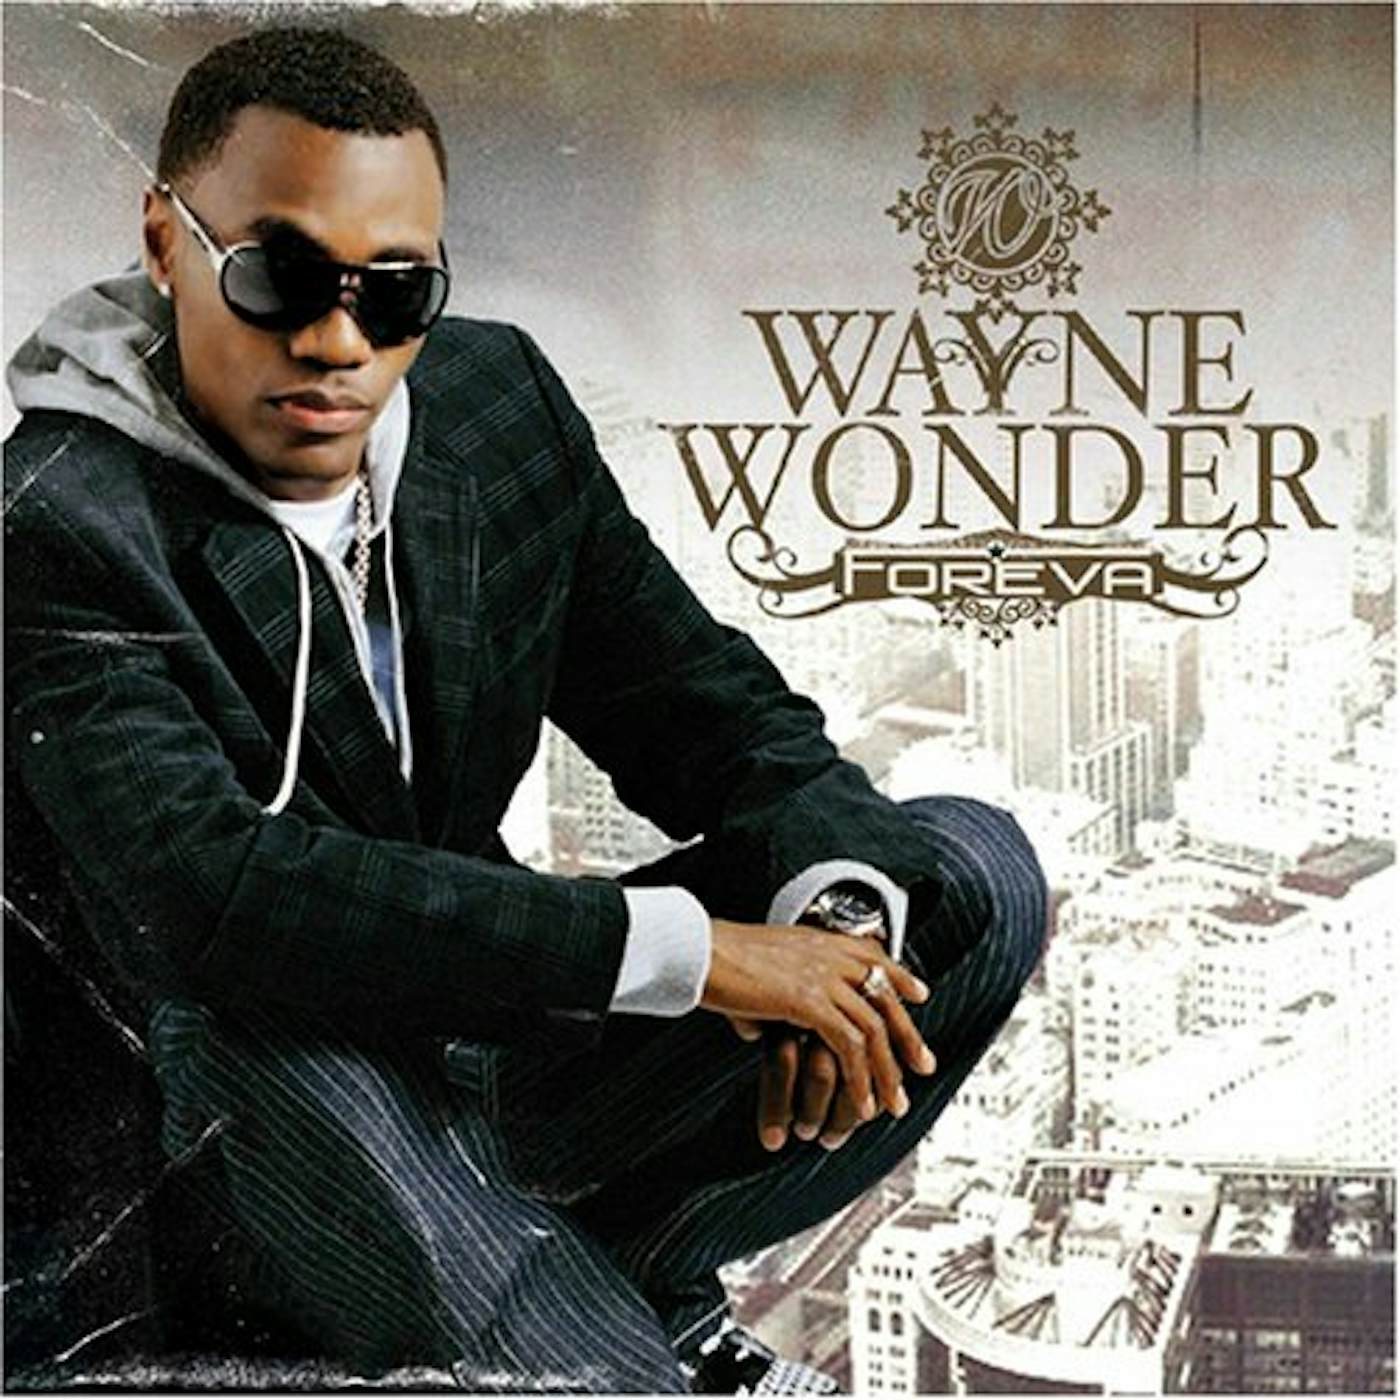 Wayne Wonder FOREVA CD